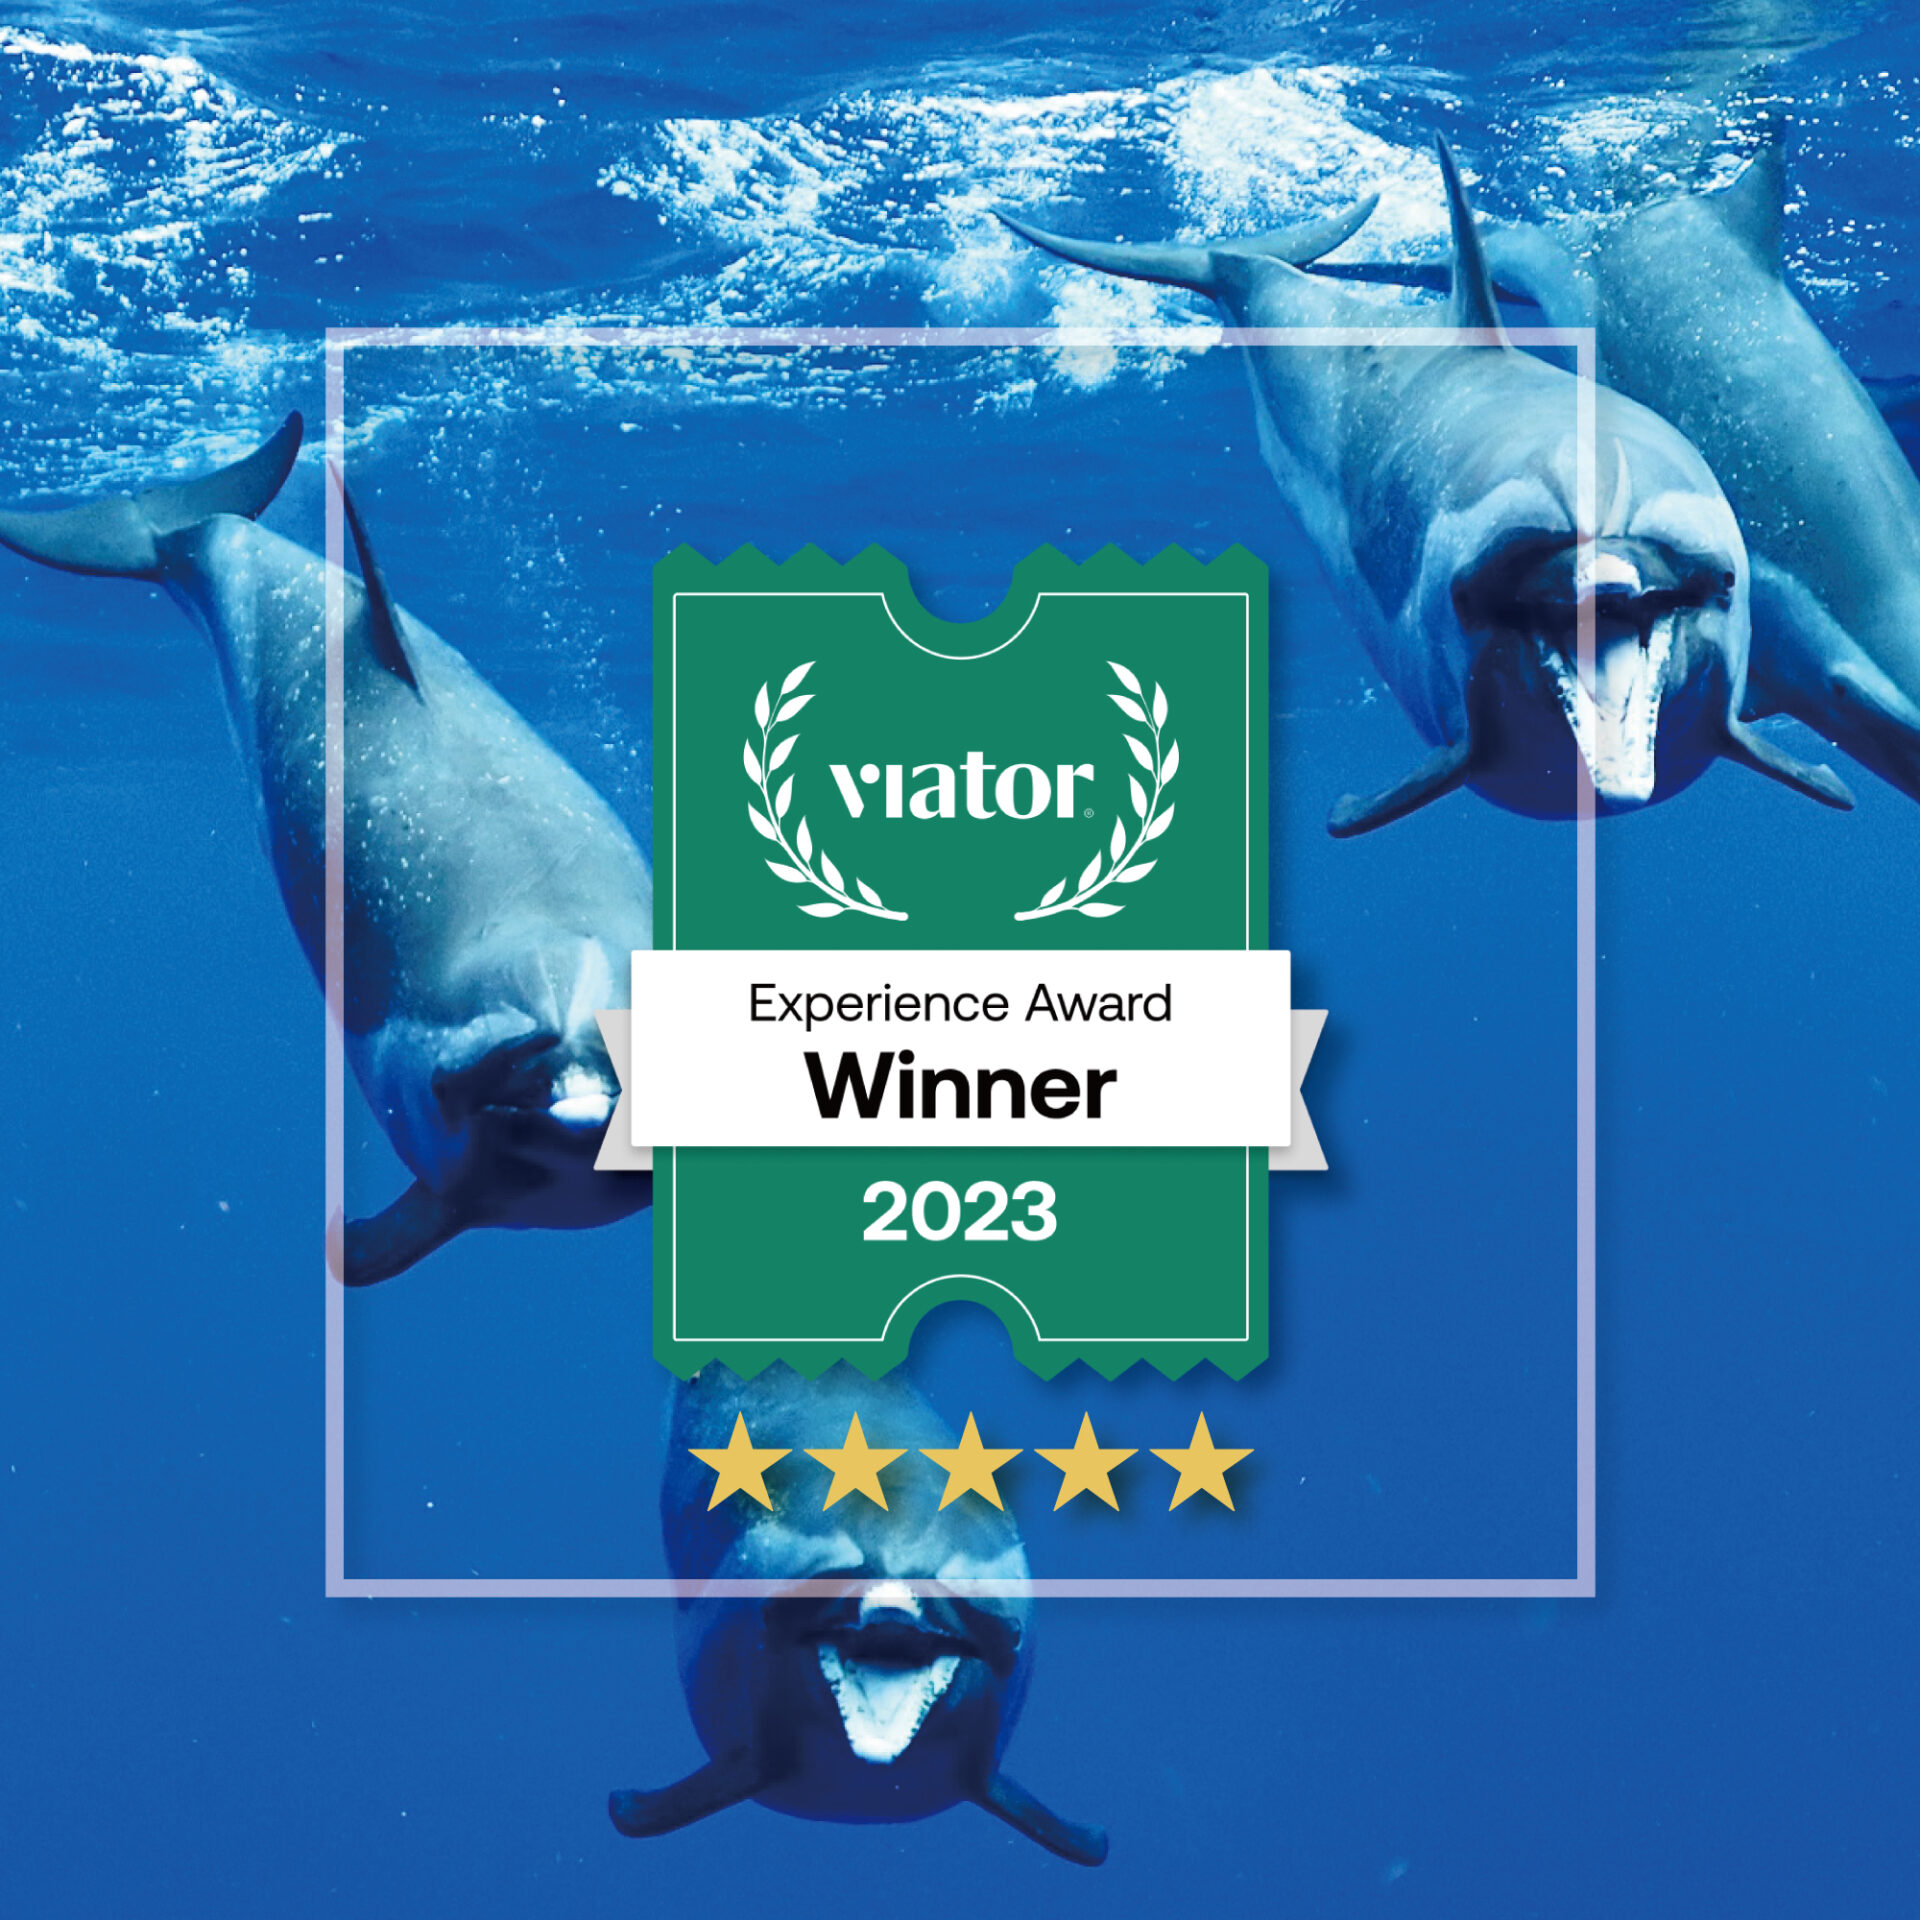 Viator Experience Award winner for 2023